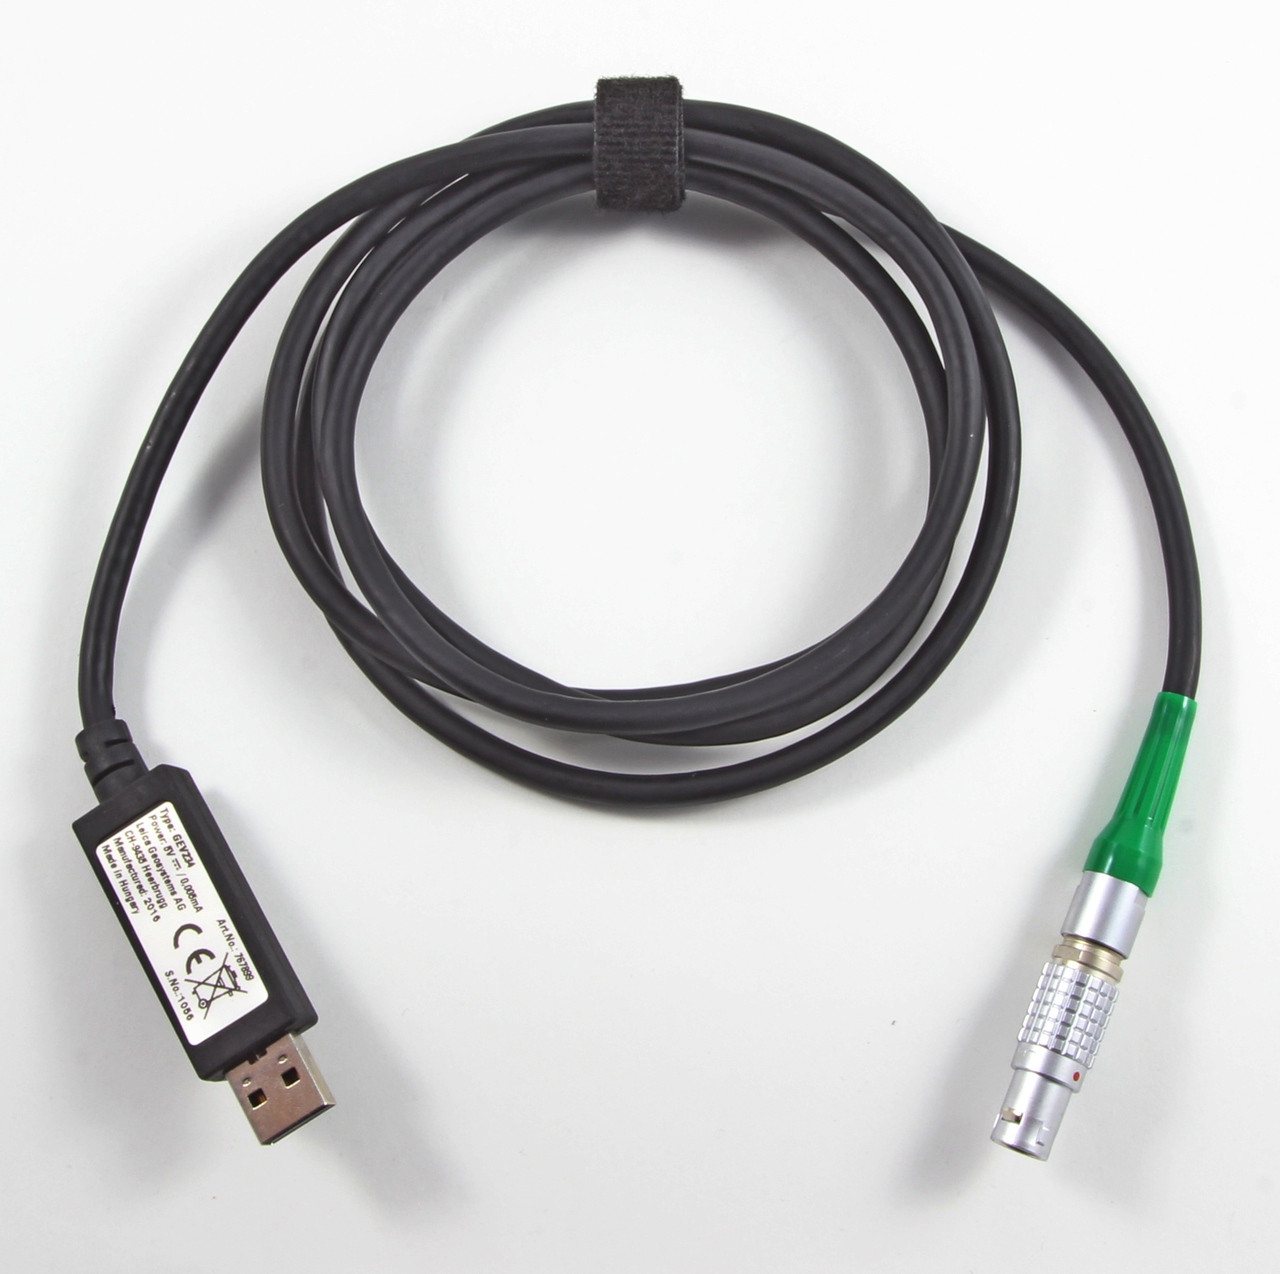 Leica GEV234 1.65m CS/GS/PC Data Transfer Cable - LEMO to Standard USB Type A Kara Company, Inc.